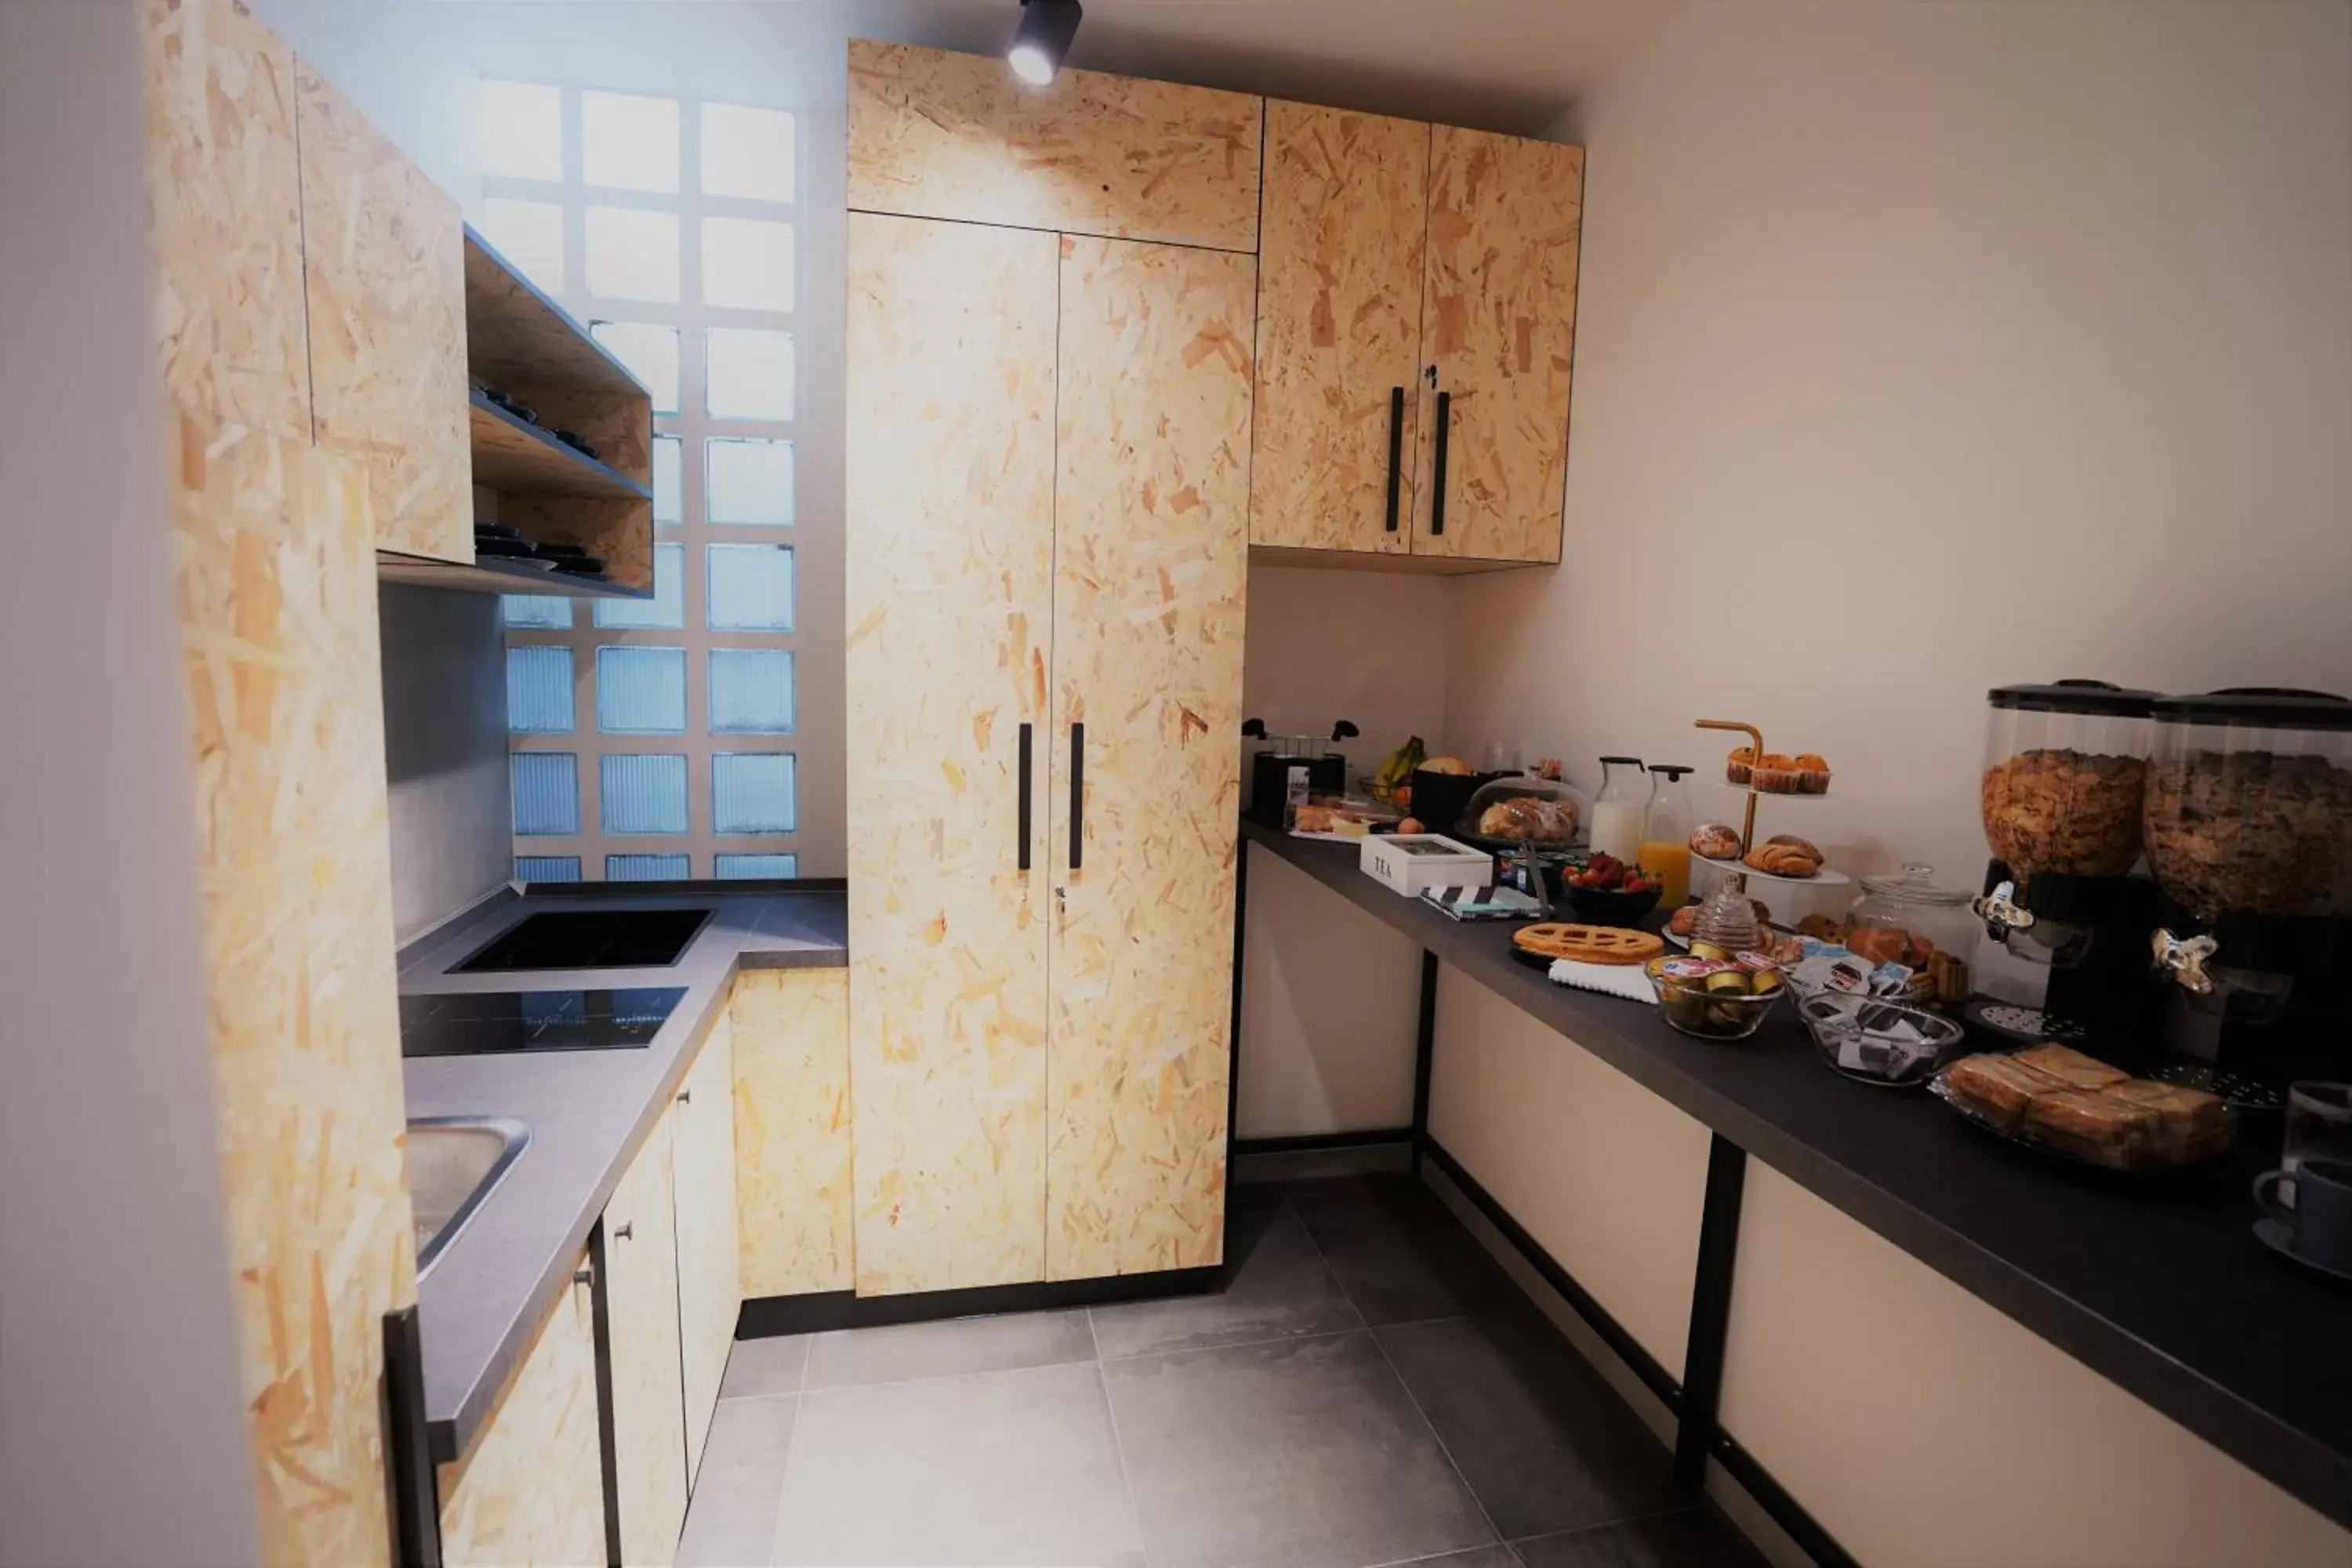 Kitchen or kitchenette, Kitchen/Kitchenette in Nacu 90